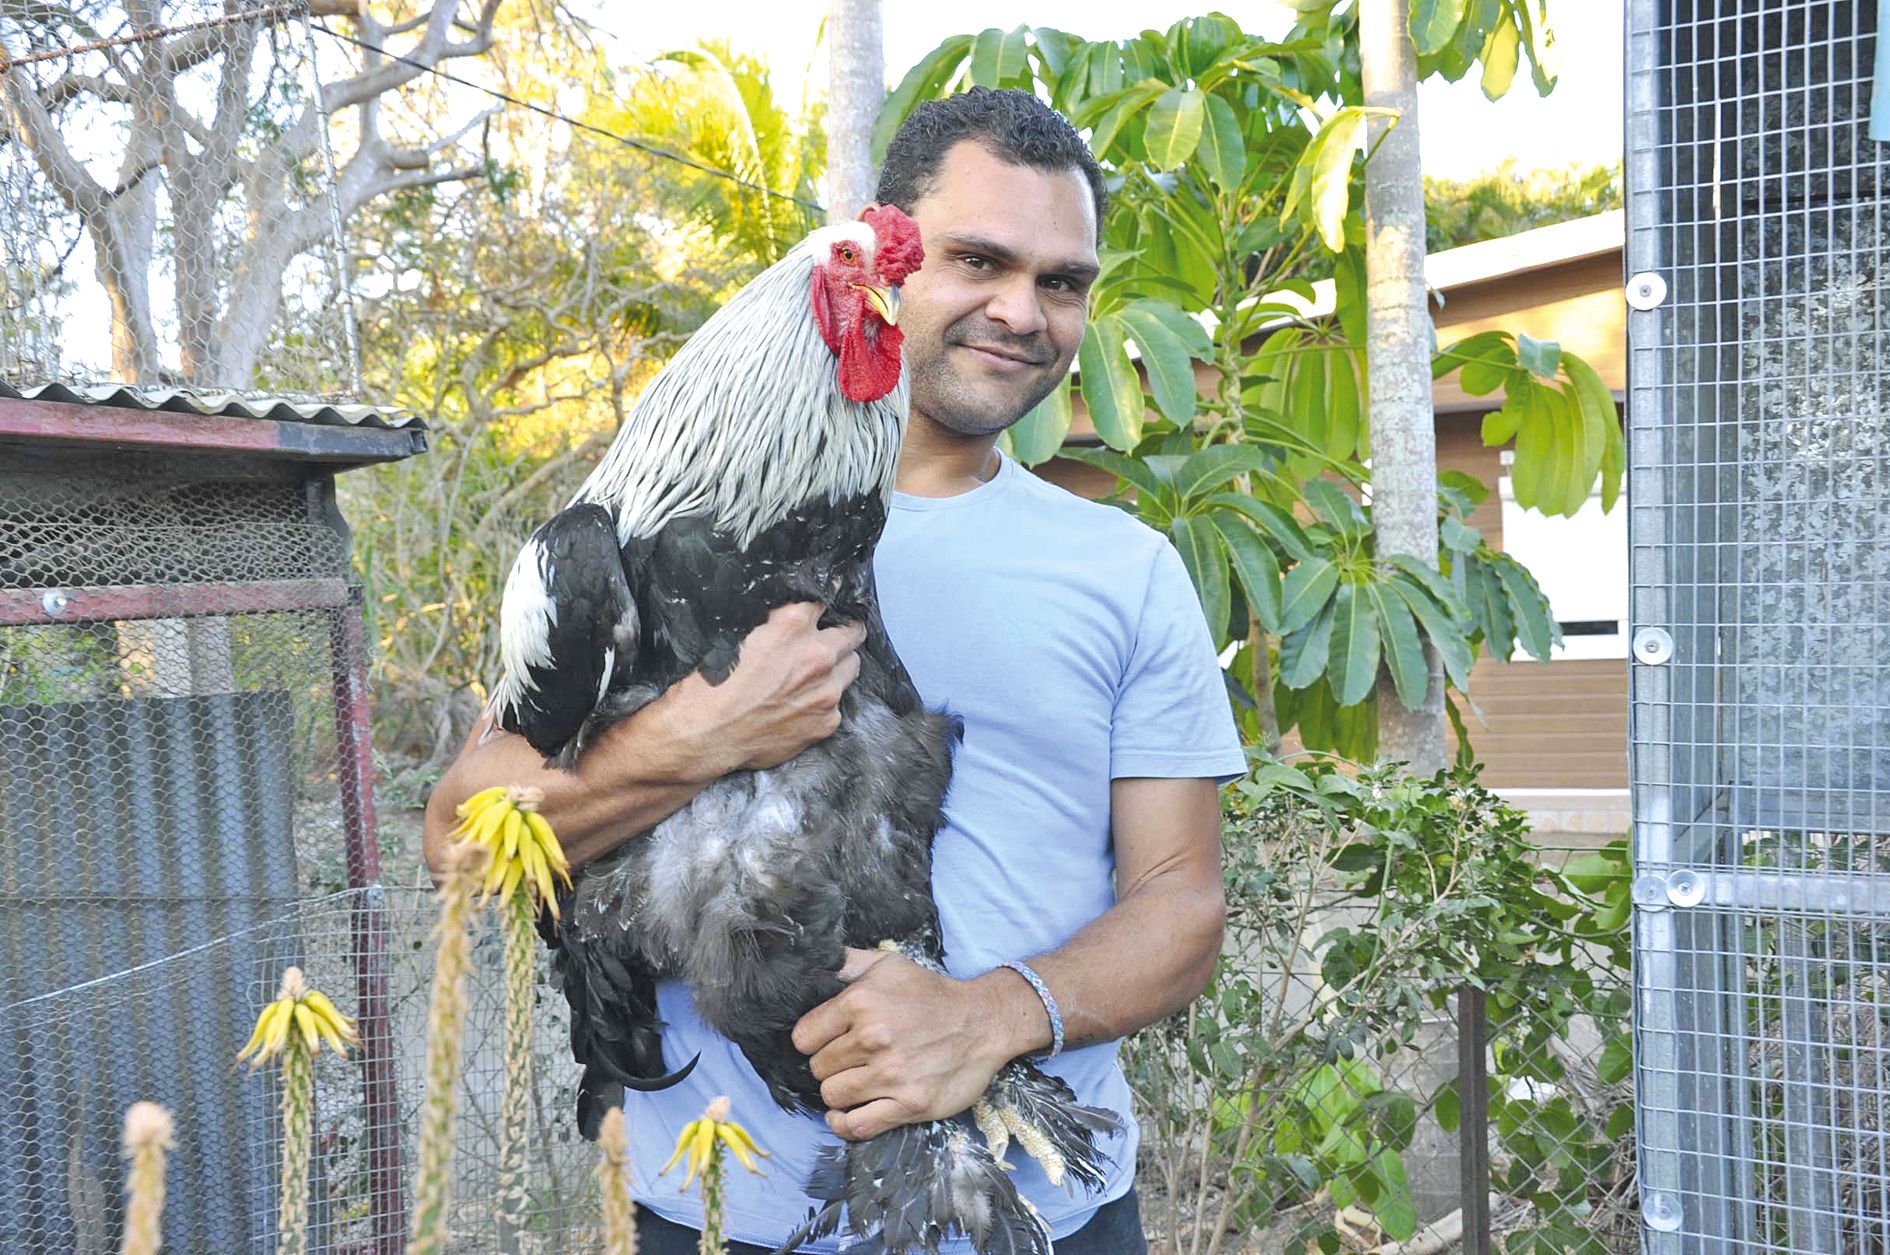 « Quand on connaît ce type d’animal, on se rend compte qu’il devient vite plus qu’une poule ». Ici, Emile Martin avec un coq de race brahma.